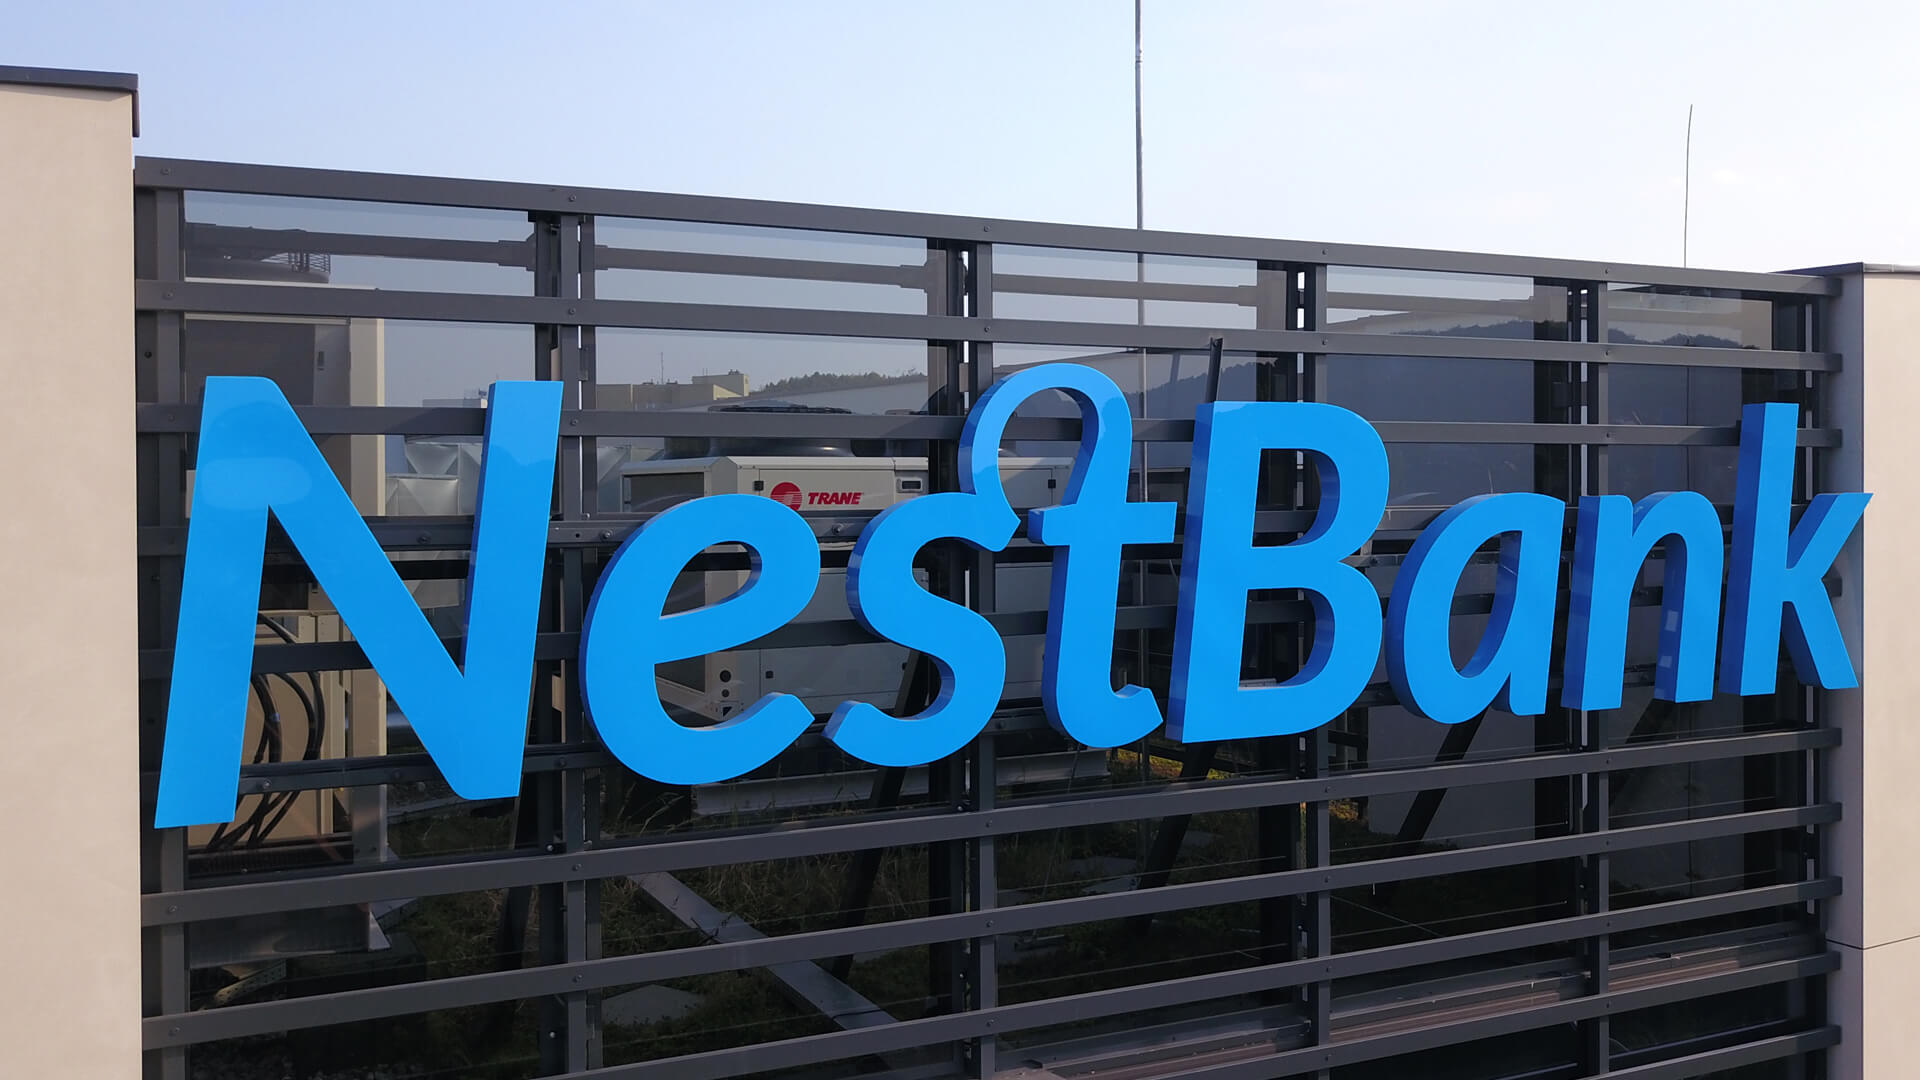 nestbank  - nestbank-3D-led-letters-bank-3d-chanel-letters-publicité-nest-bank-letters-3d-sur-le-bâtiment-lettres-nest-bank